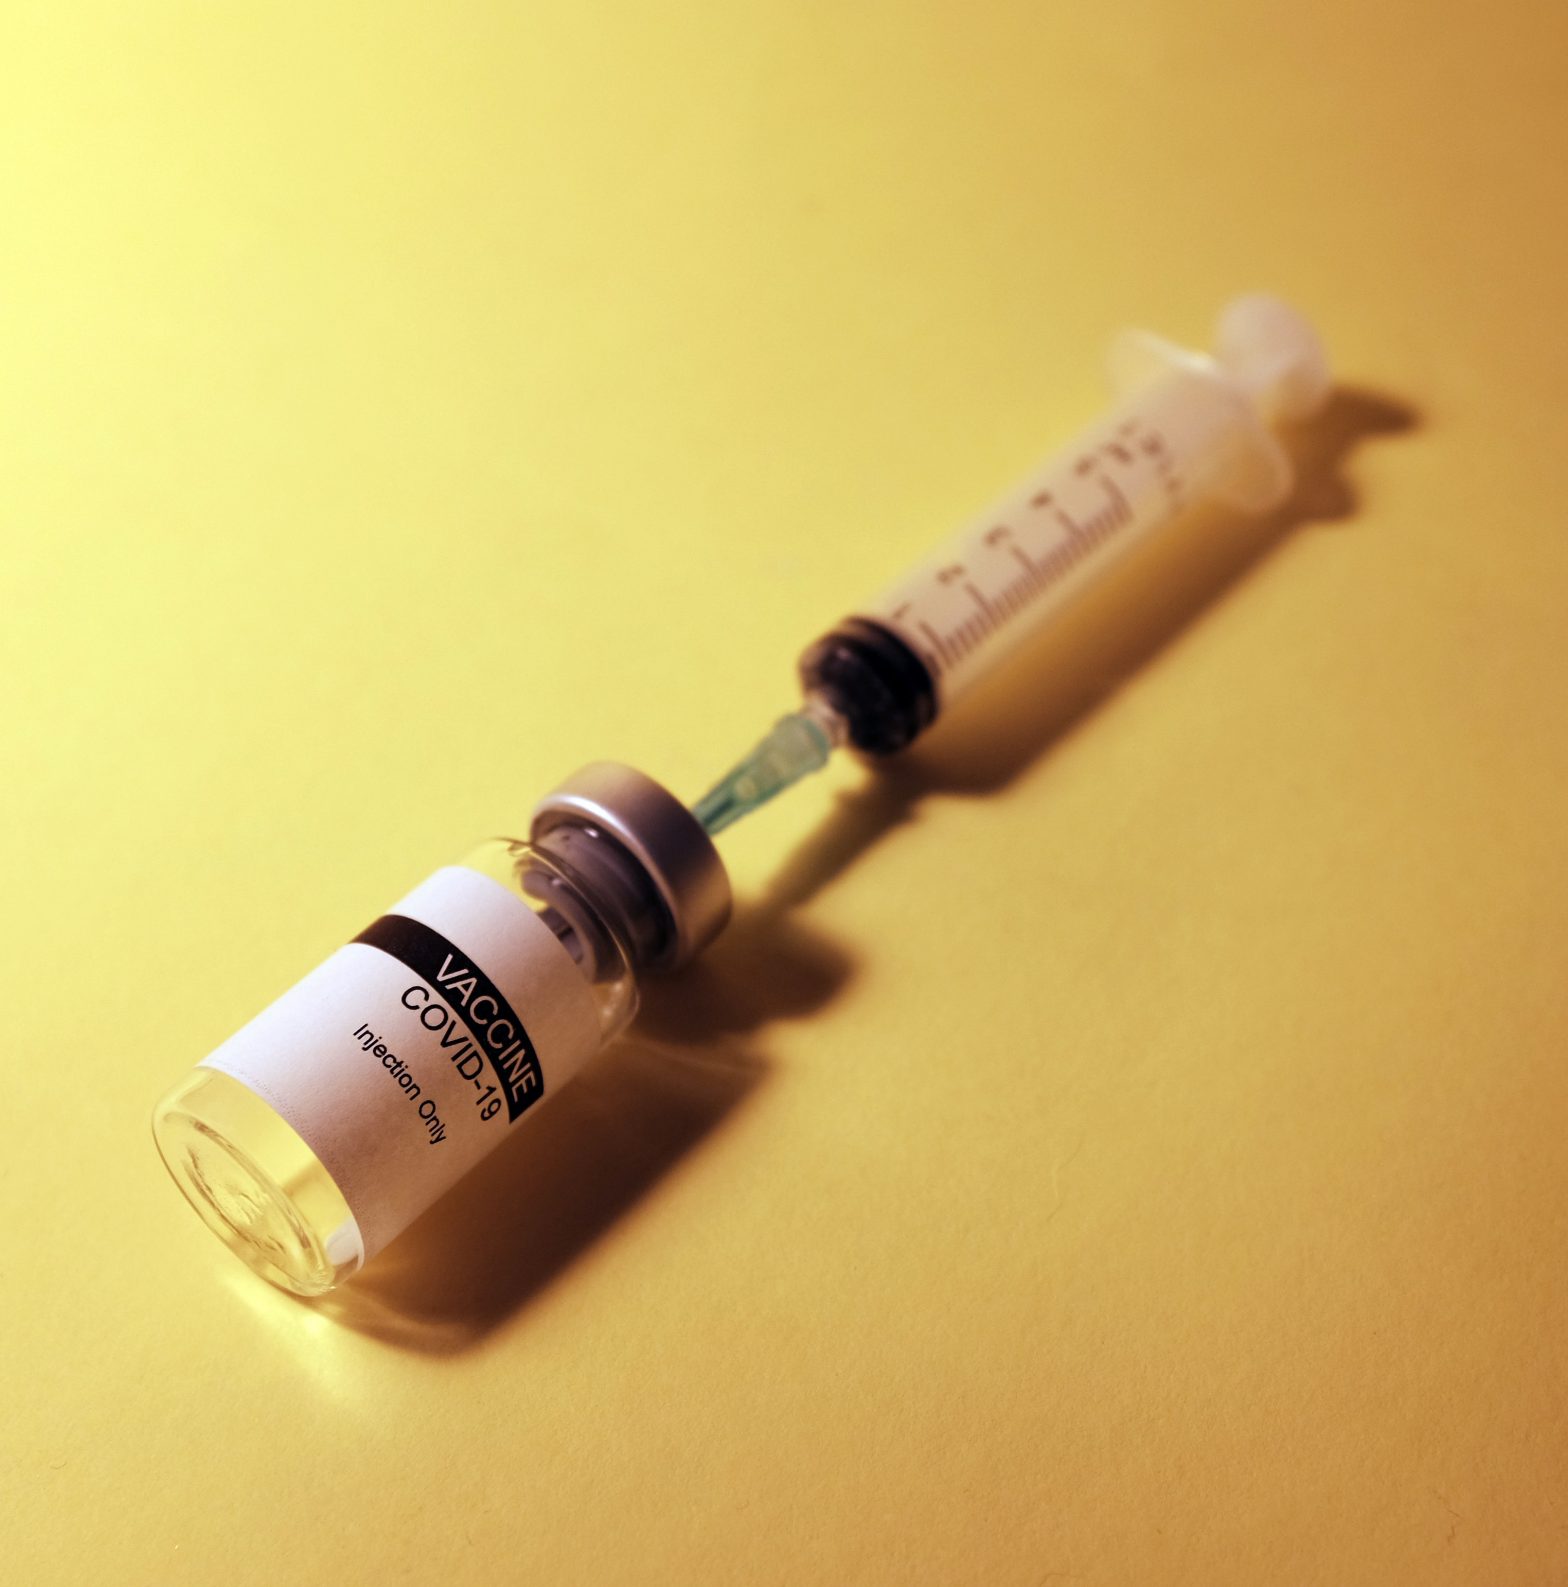 Rifiuto del vaccino da parte di un dipendente - avv. Erica Mussato - Agoràpro